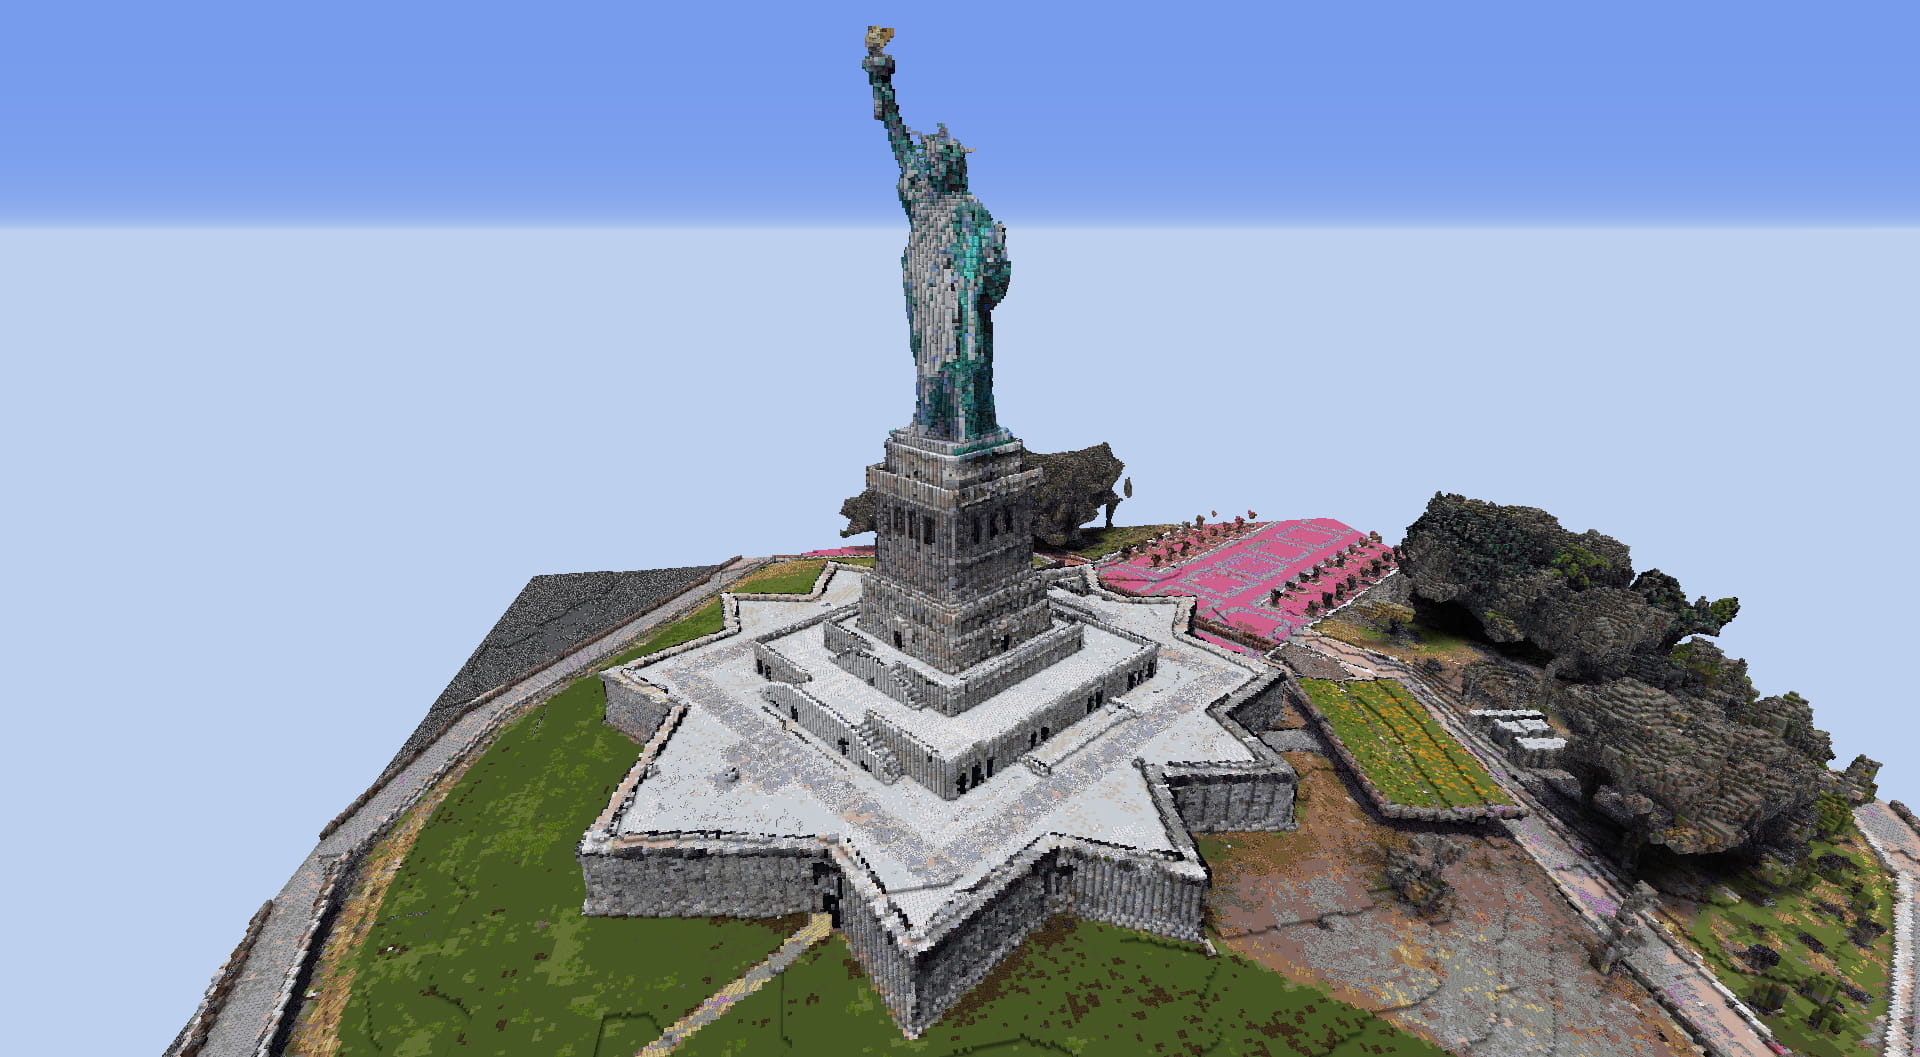 Un joueur a converti les données de Google Earth dans Minecraft - Minecraft .fr